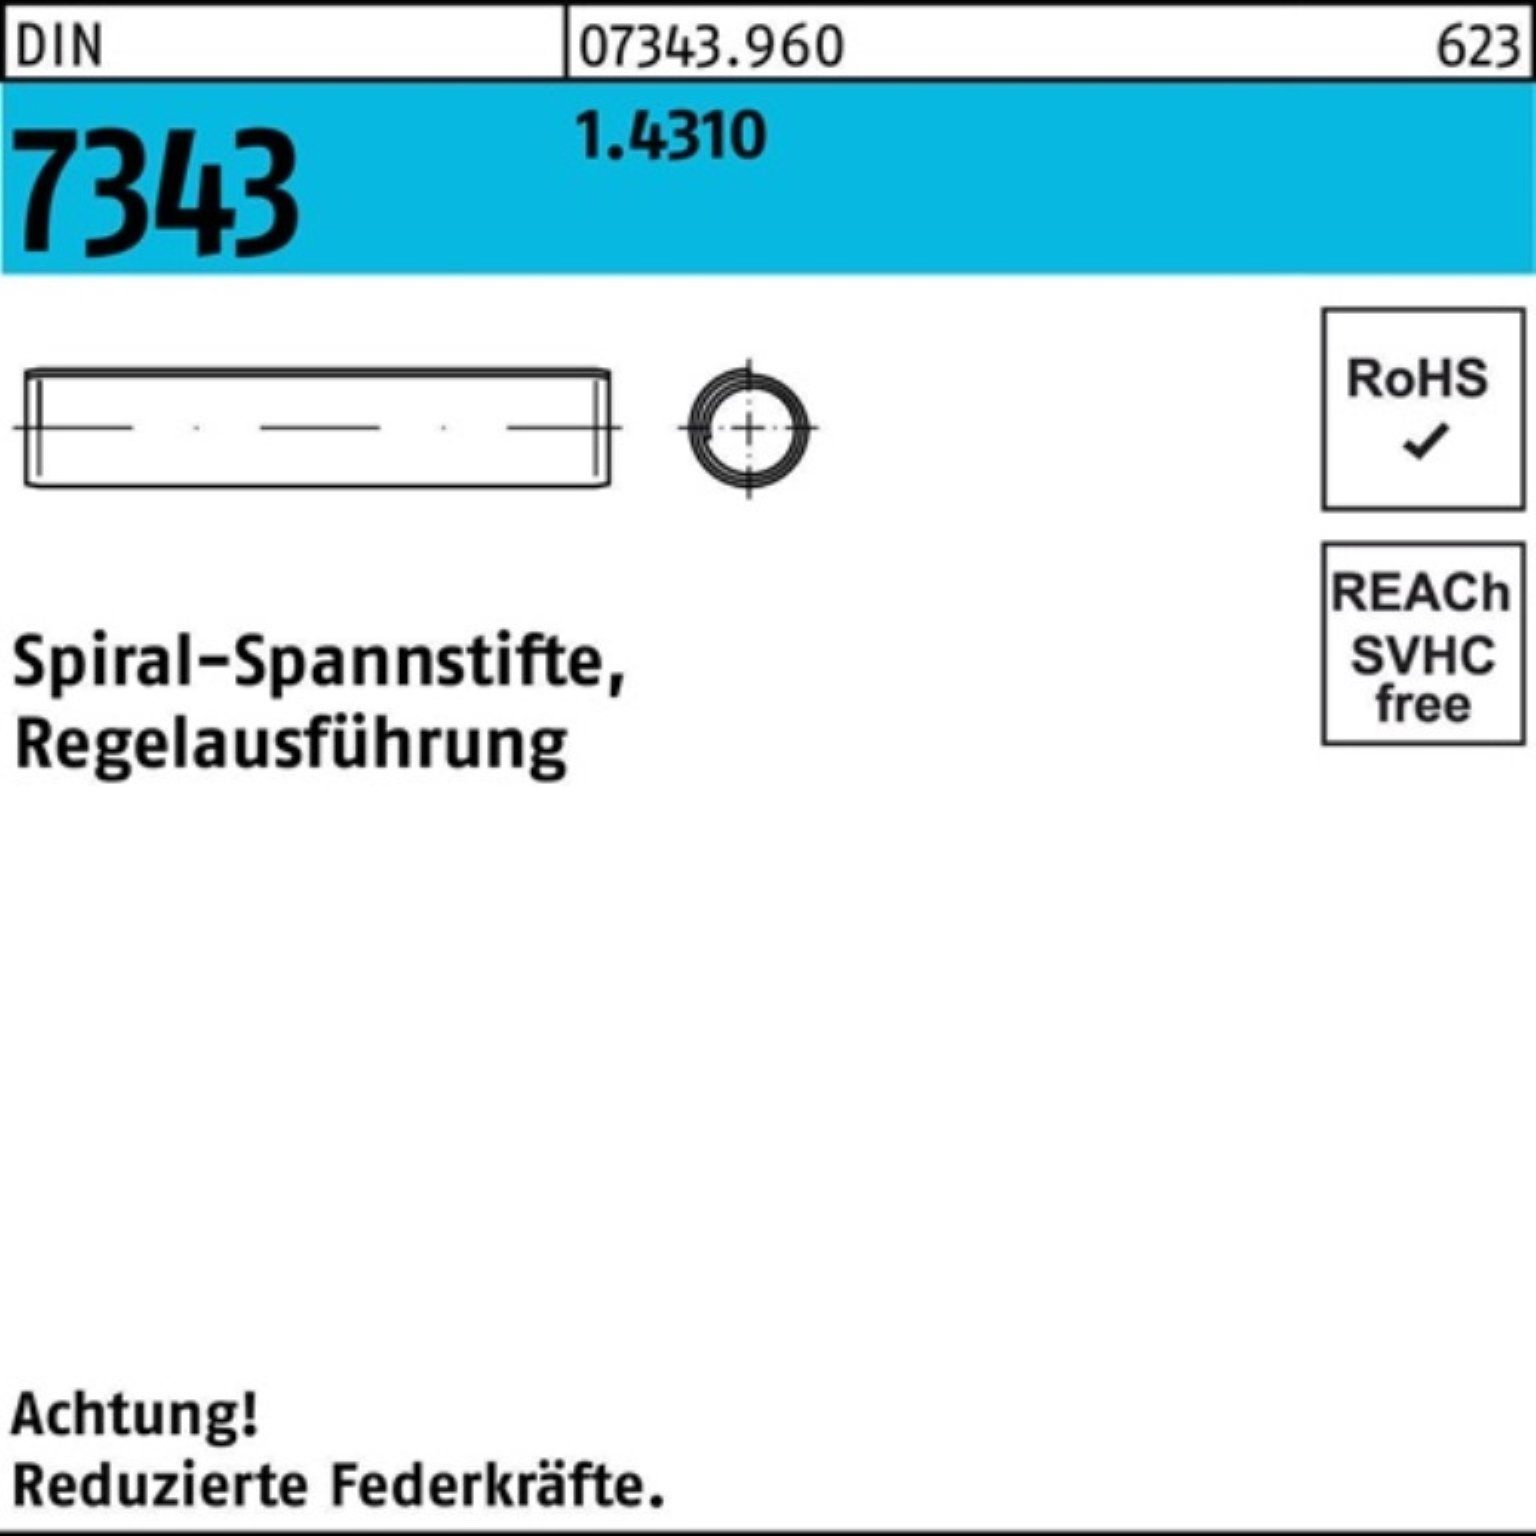 Reyher Spannstift 1000er Pack Spiralspannstift DIN 7343/ISO 8750 1,5x 5 1.4310 Regelausf